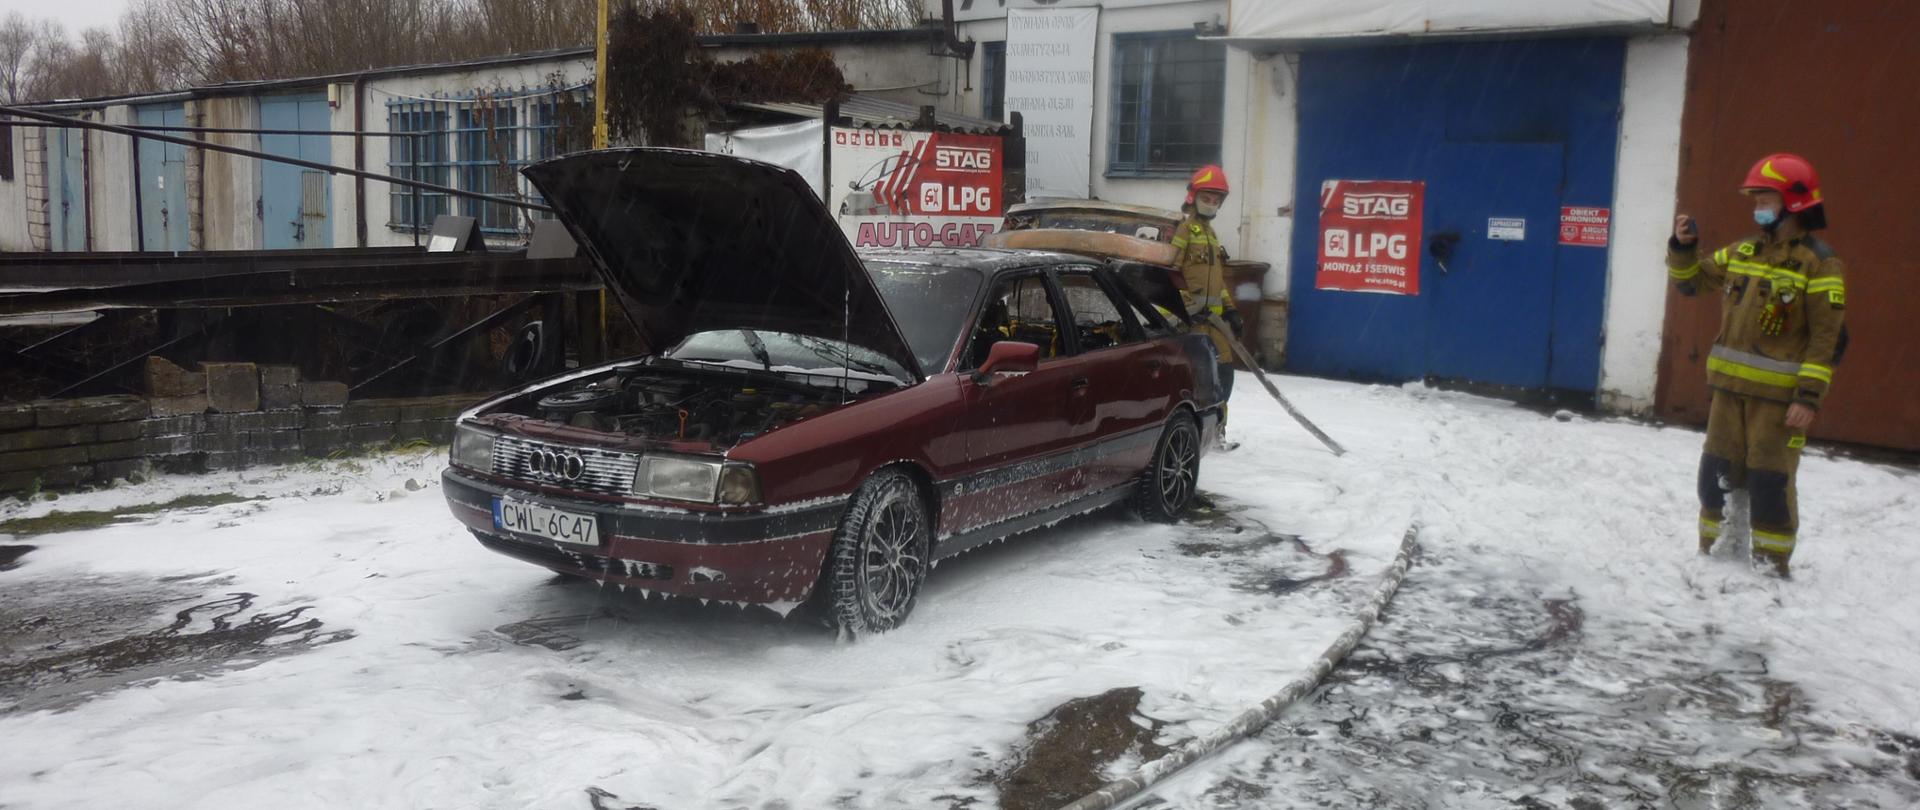 Pożar samochodu Płocka 8, strażacy dogaszający samochód